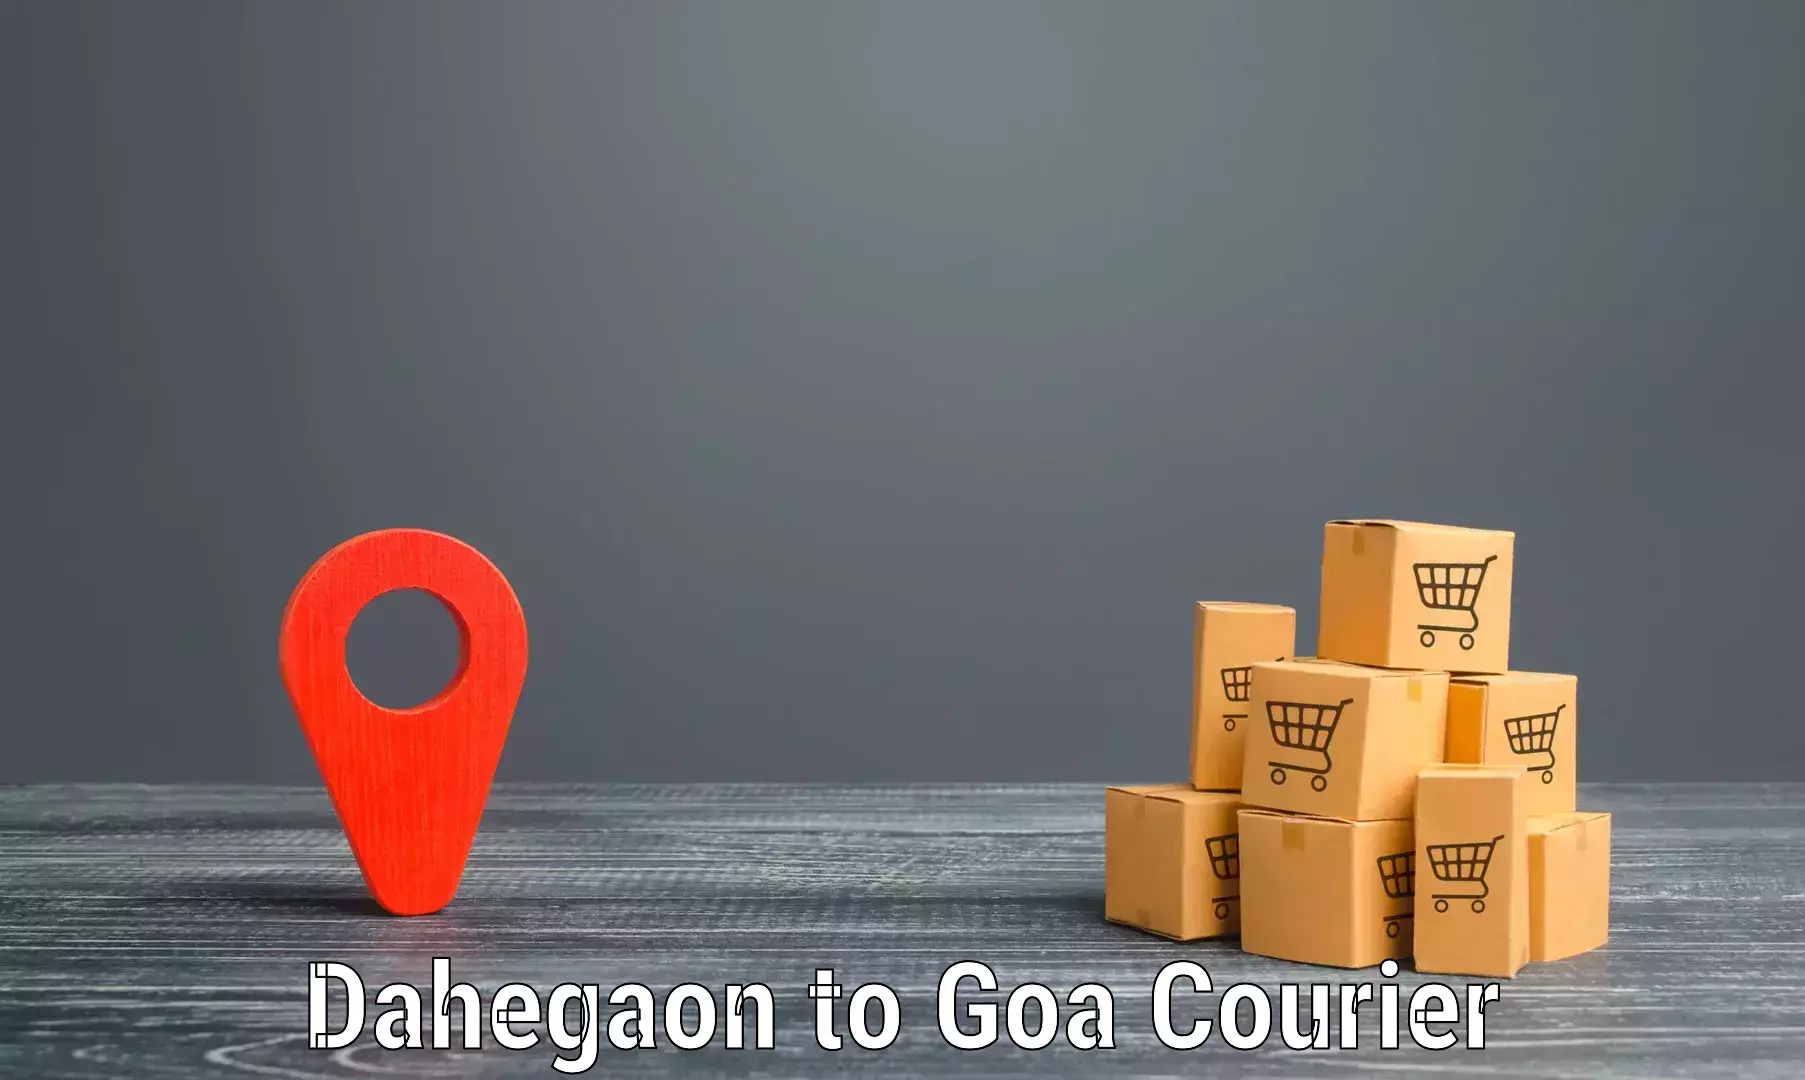 Nationwide shipping capabilities Dahegaon to Margao